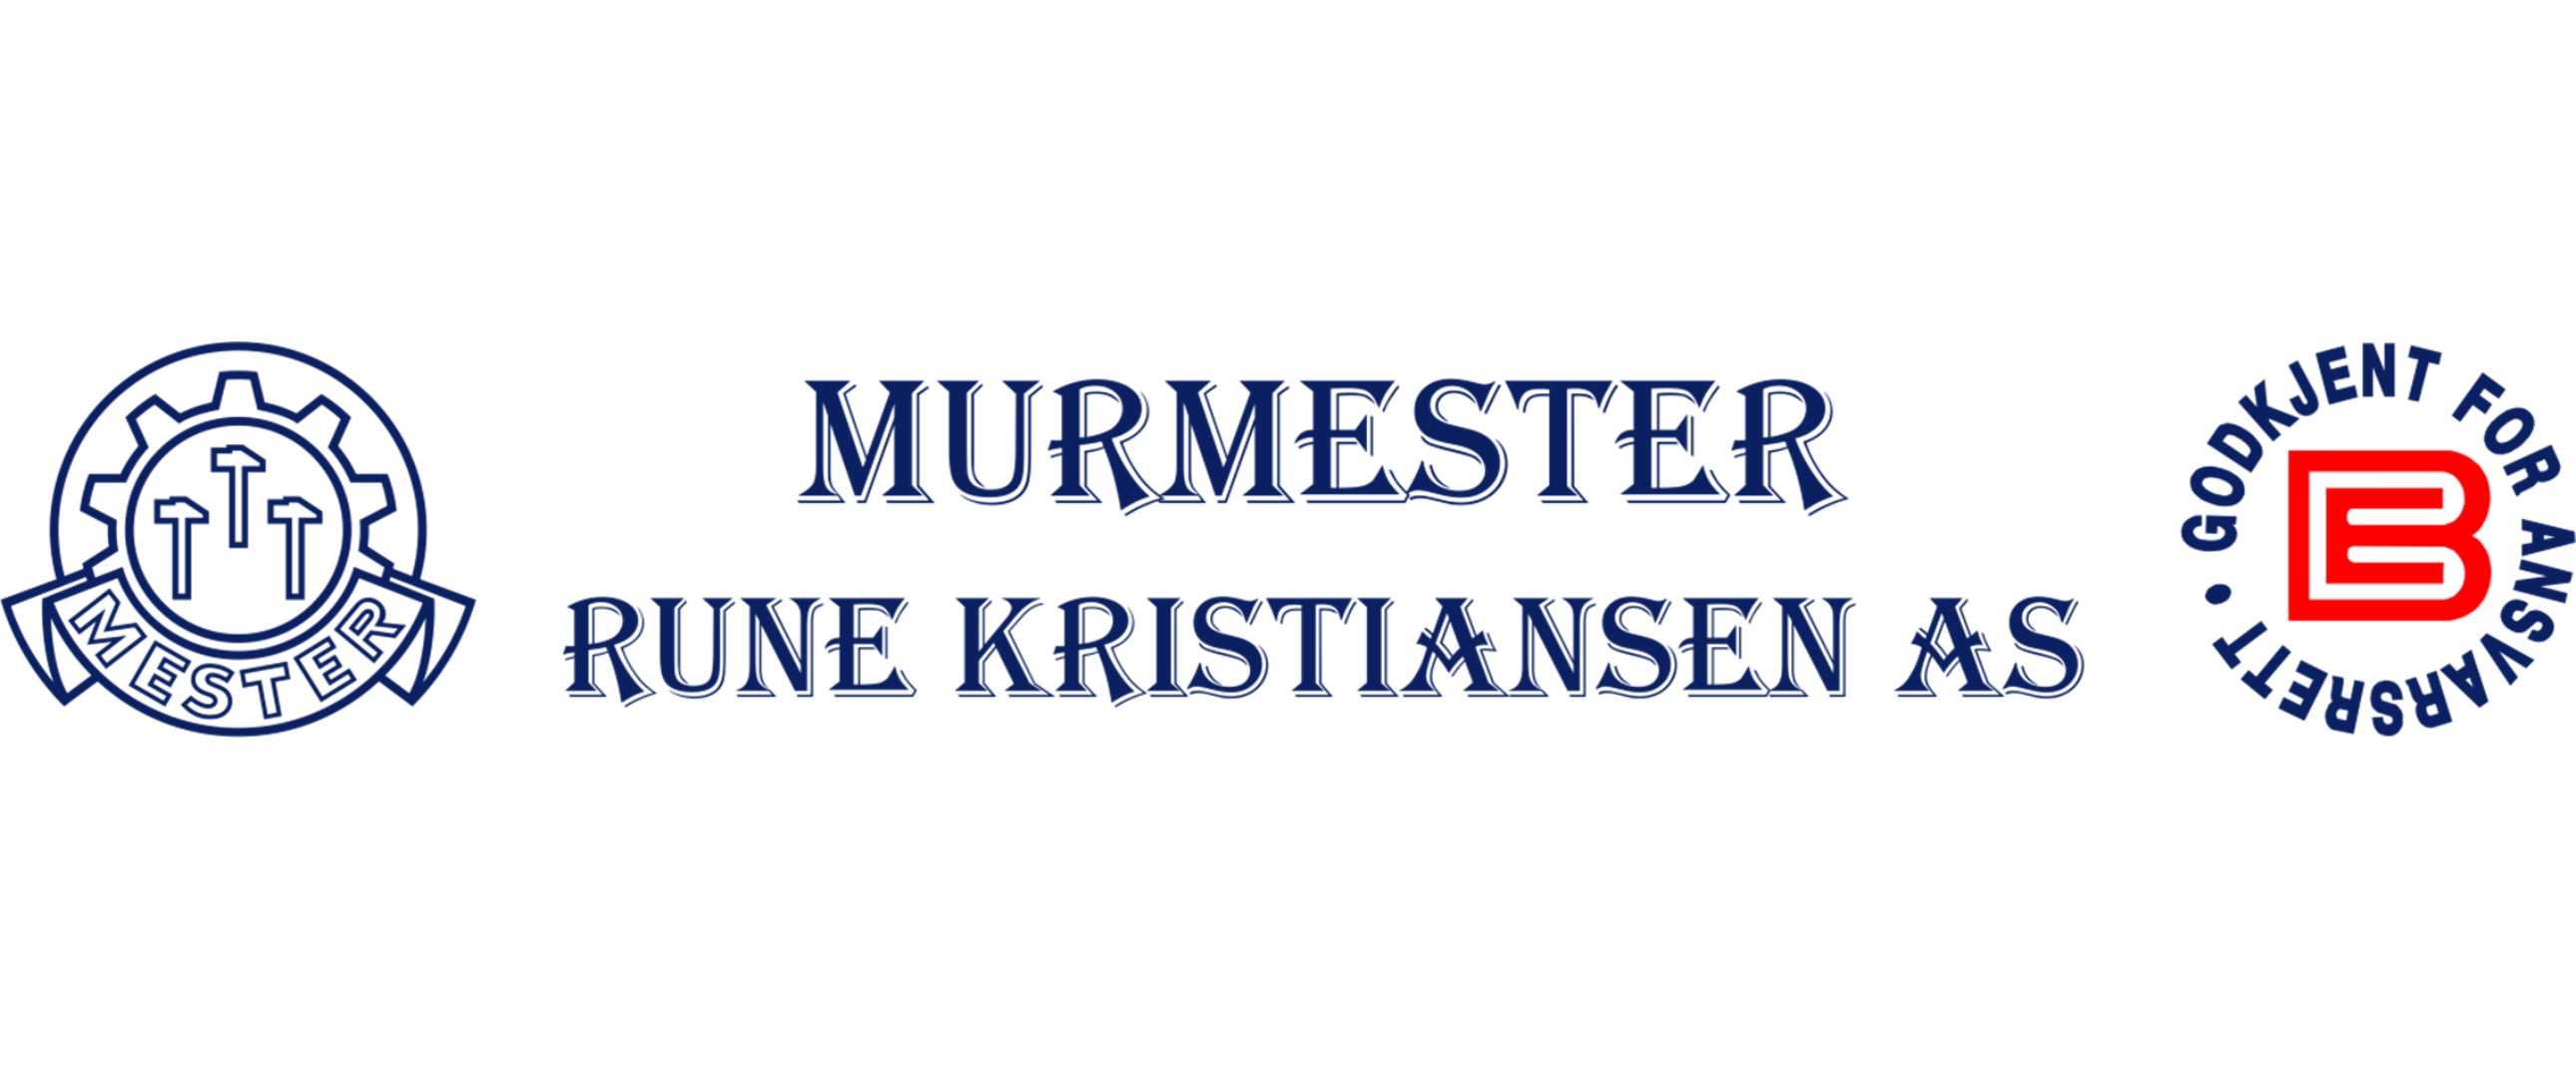 MURMESTER RUNE KRISTIANSEN AS logo